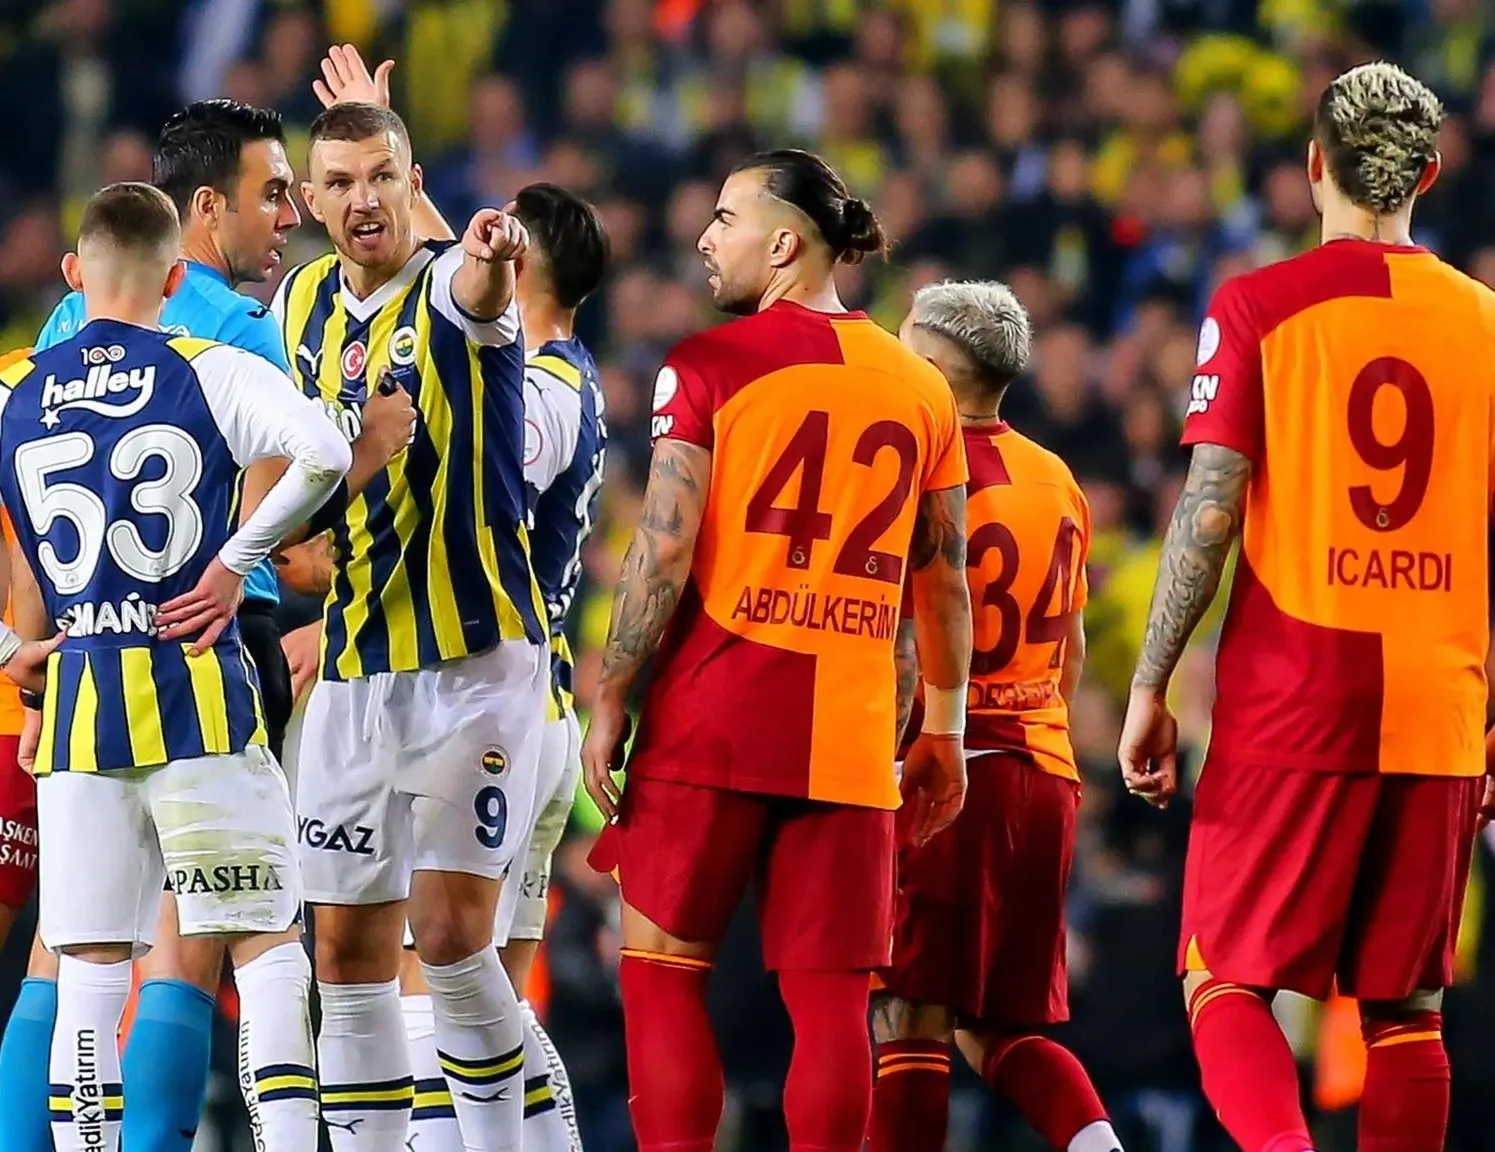 Fenerbahçe-Galatasaray Süper Kupa finalini Takvim.com.tr sordu uzman isimler değerlendirdi